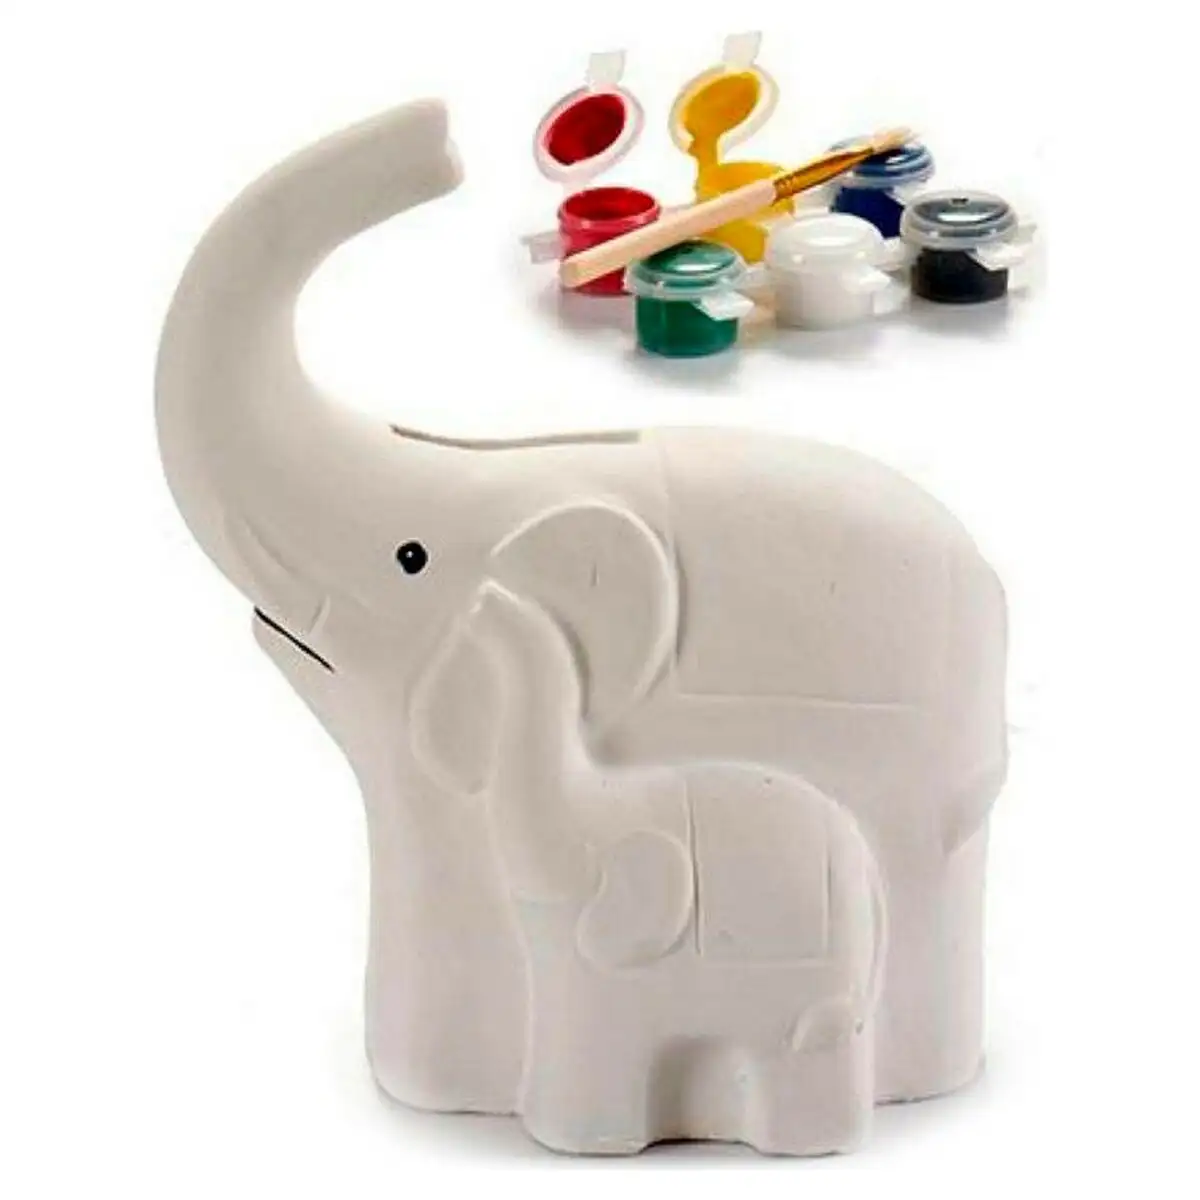 Tirelire elephant 8 3 x 14 x 12 cm ceramique blanc_8736. DIAYTAR SENEGAL - Votre Oasis de Shopping en Ligne. Explorez notre boutique et découvrez des produits qui ajoutent une touche de magie à votre quotidien.